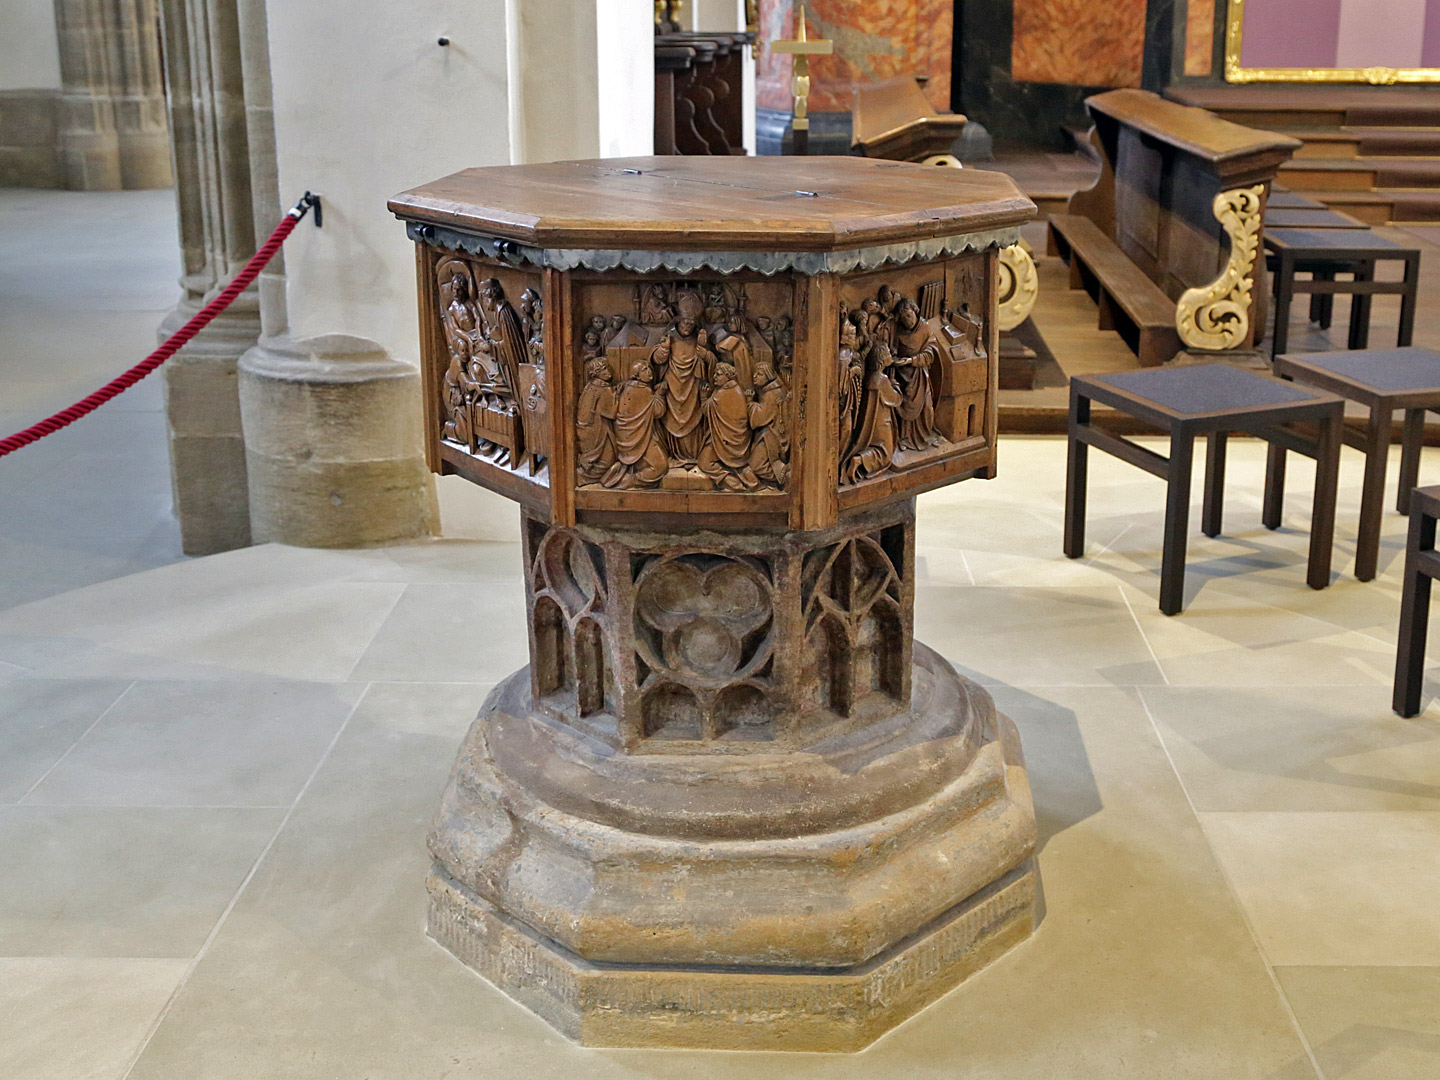 Die Holzverkleidung des Taufsteins zeigt künstlerisch u. a. die Sakramente der katholischen Kirche.